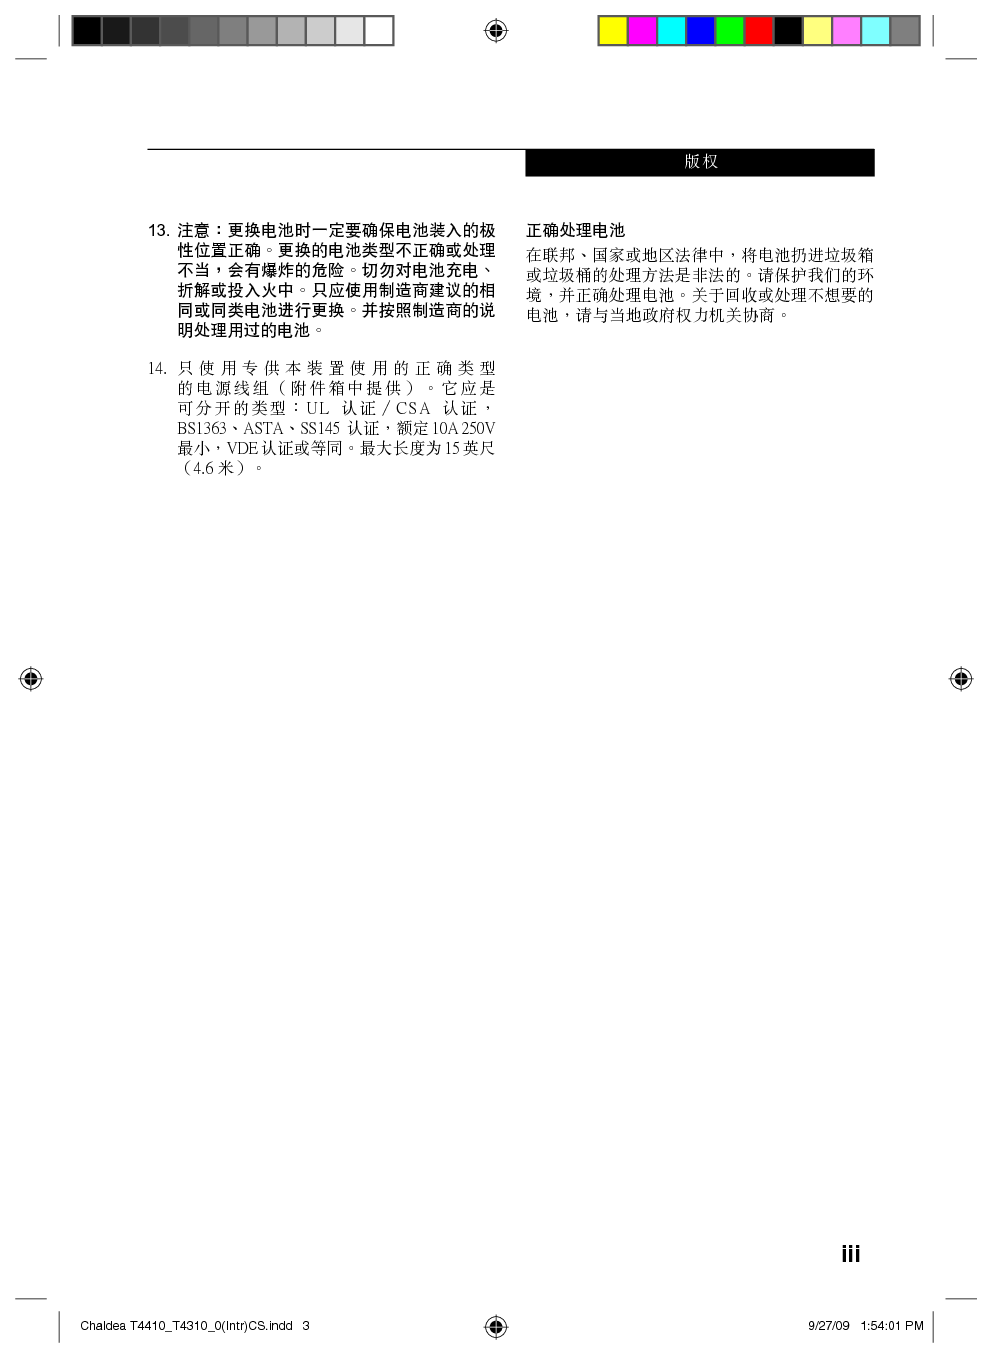 富士通 Fujitsu Lifebook T4310 使用说明书 第2页